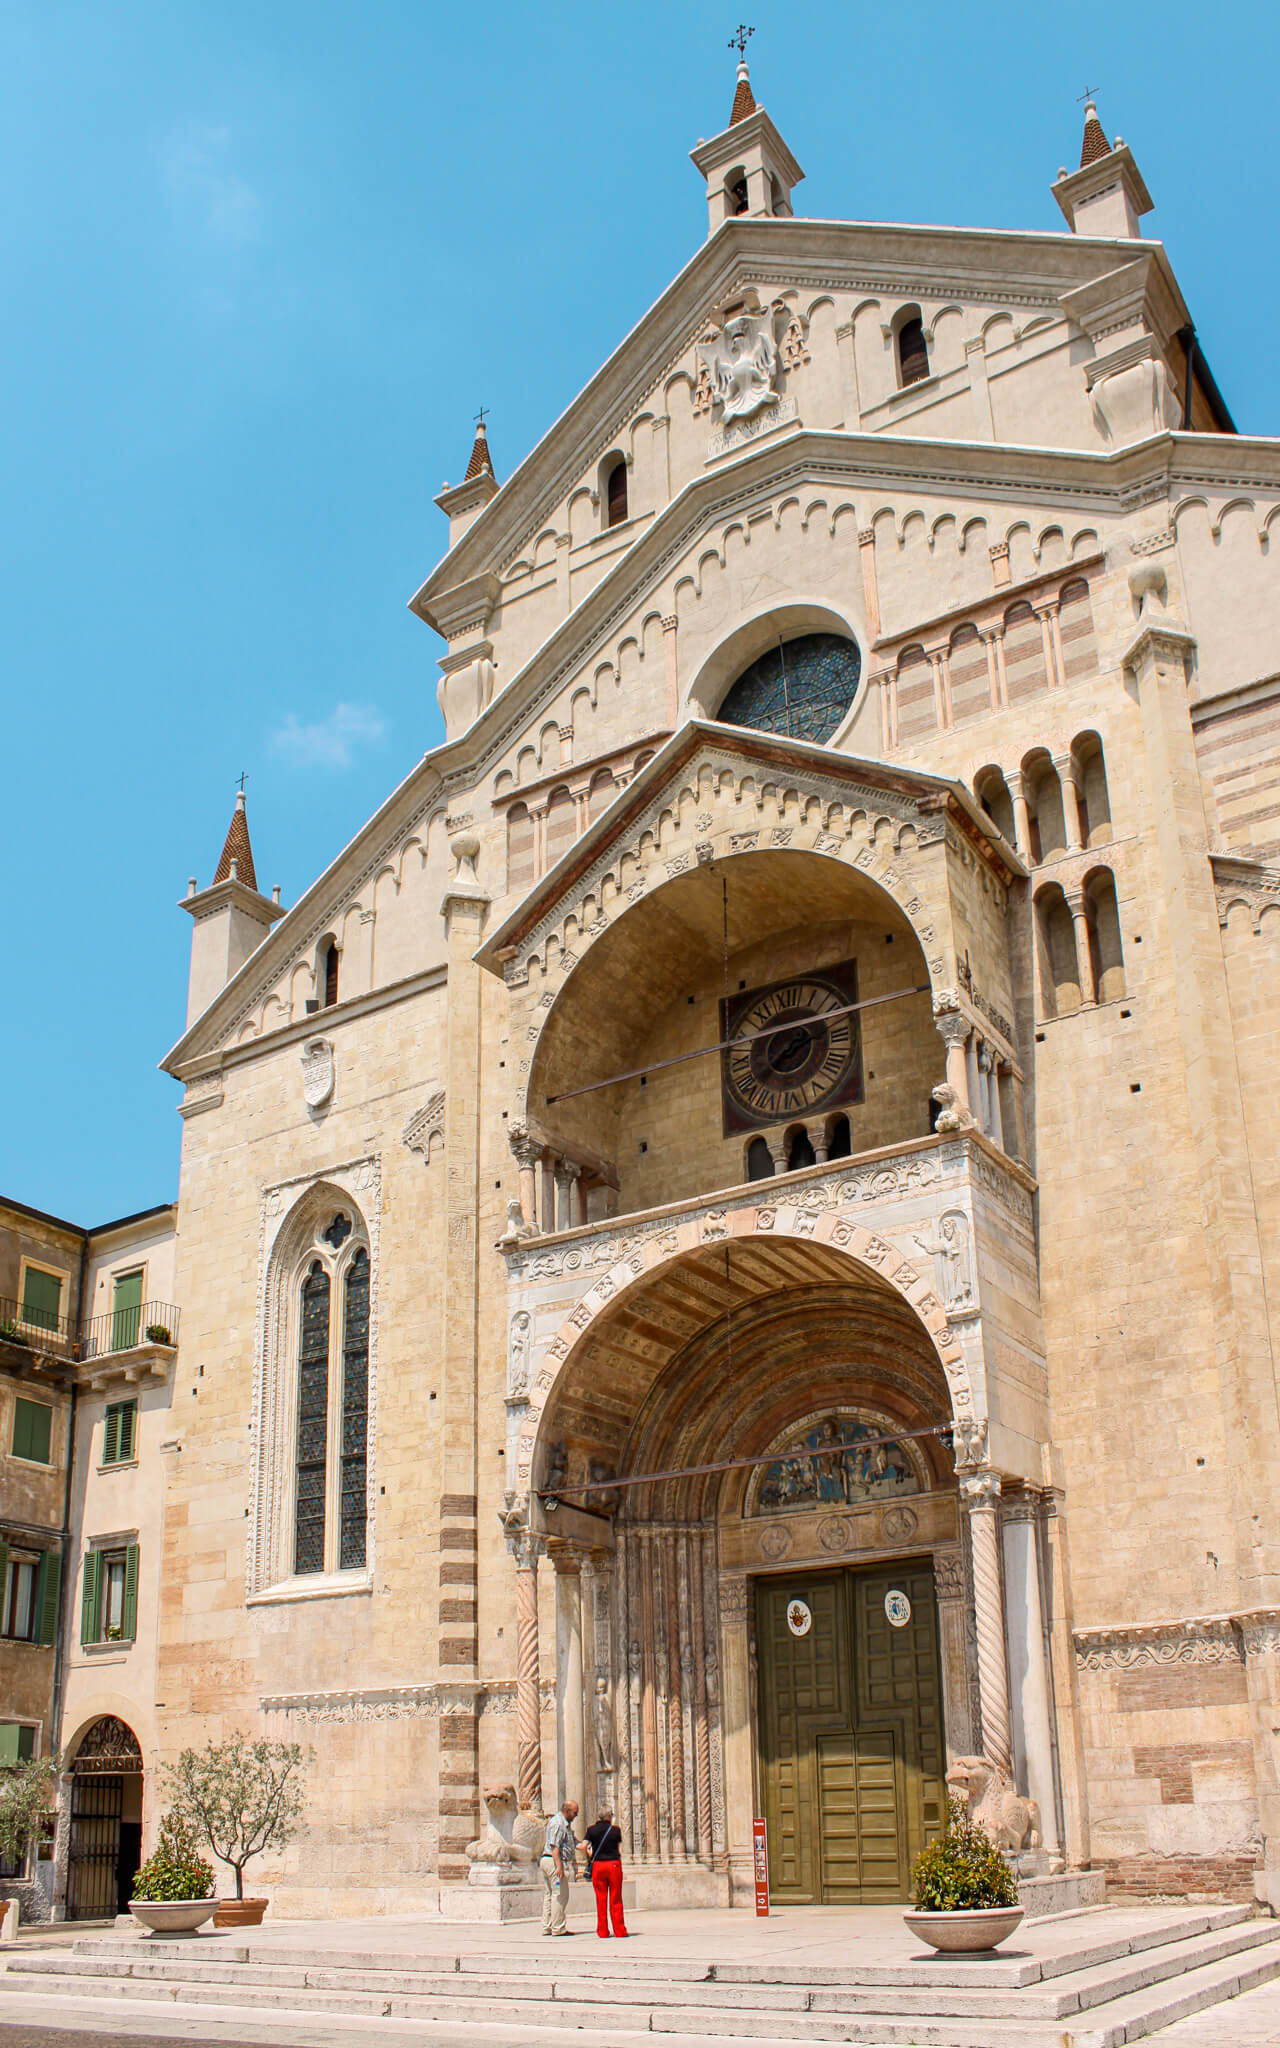 The facade of the Verona Cathedral or Duomo